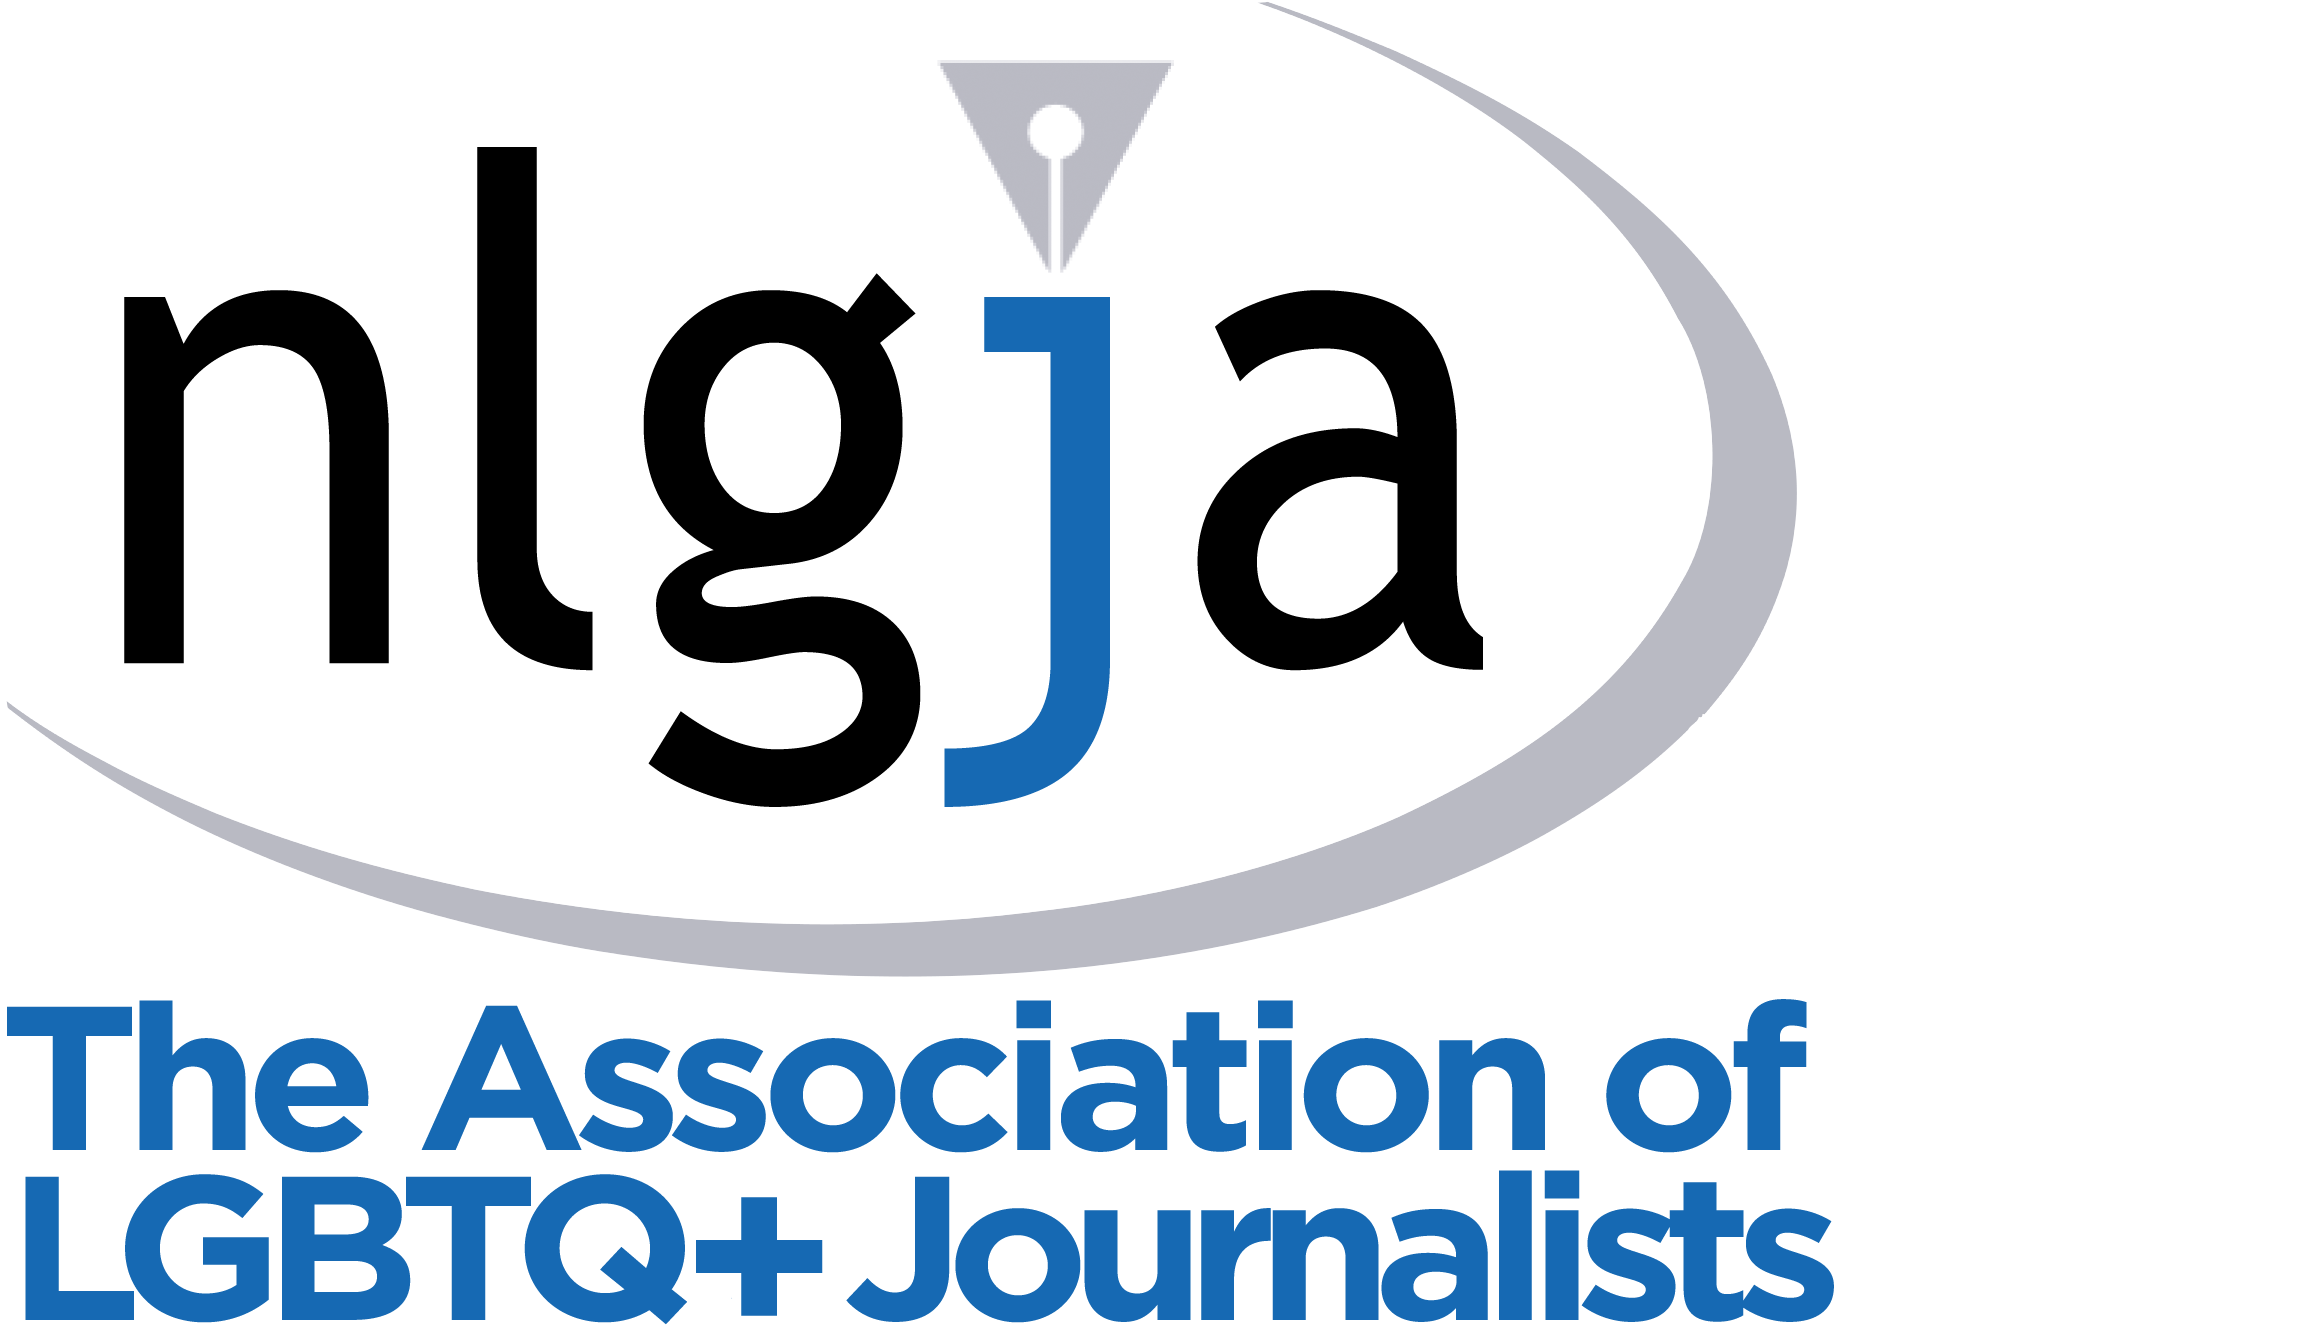 NLGJA: The Association of LGBTQ+ Journalists